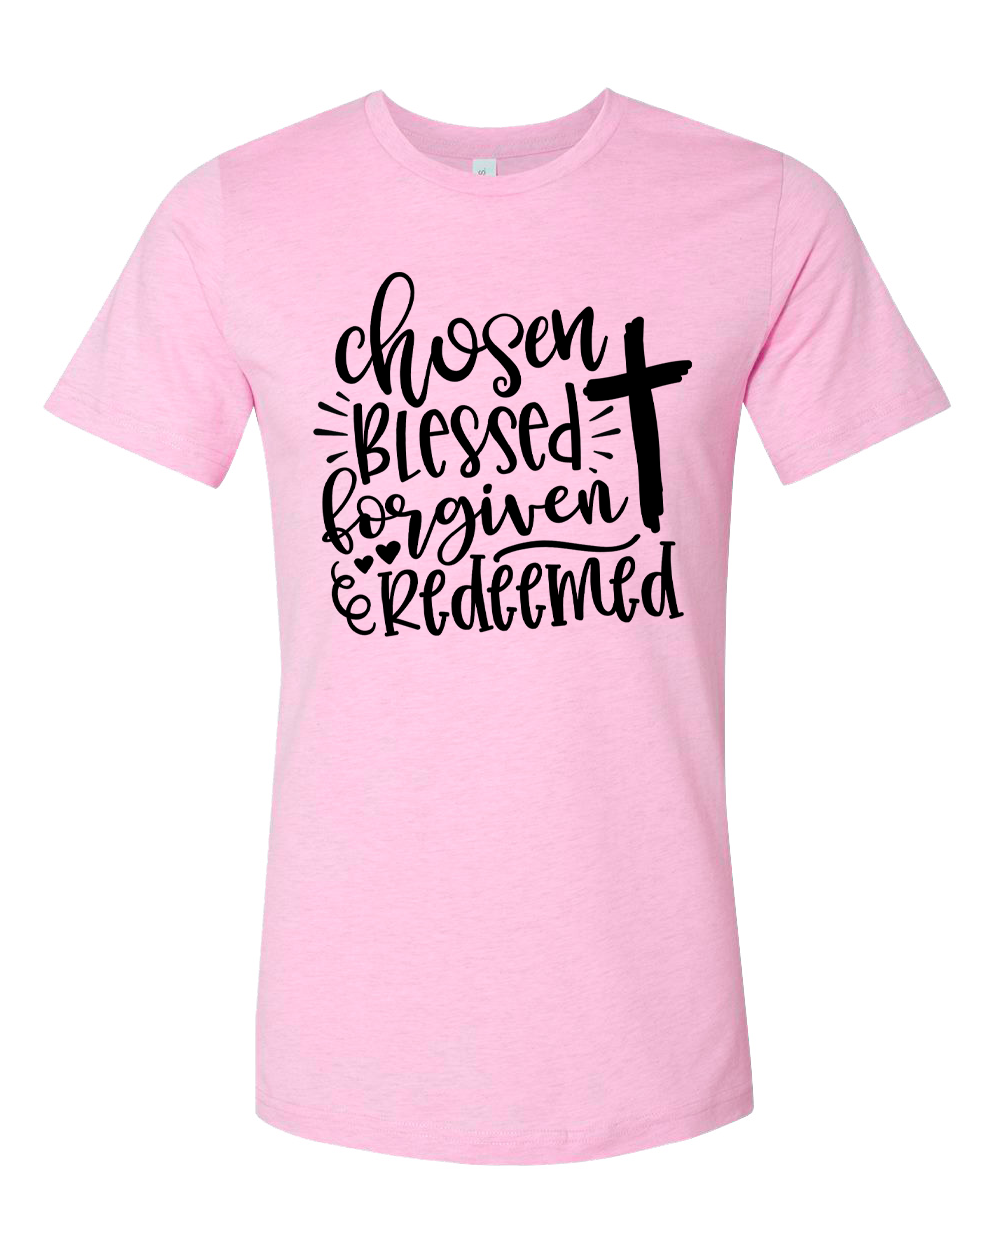 Chosen, Blessed, Forgiven, Redeemed Cross Tee